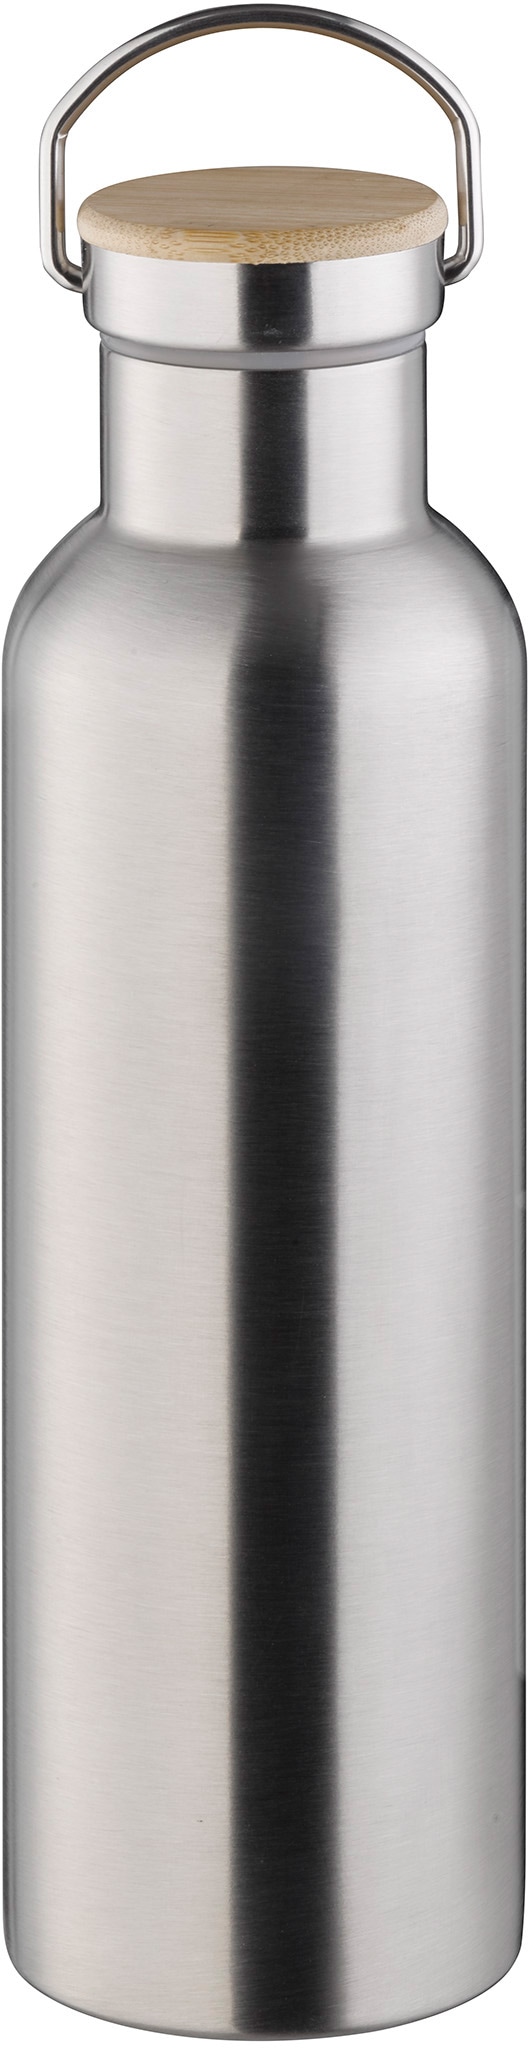 APS Isolierflasche, (1 tlg., mit Haltegurt), Edelstahl, doppelwandig, hält bis 12 Stunden heiß & 24 Stunden kalt